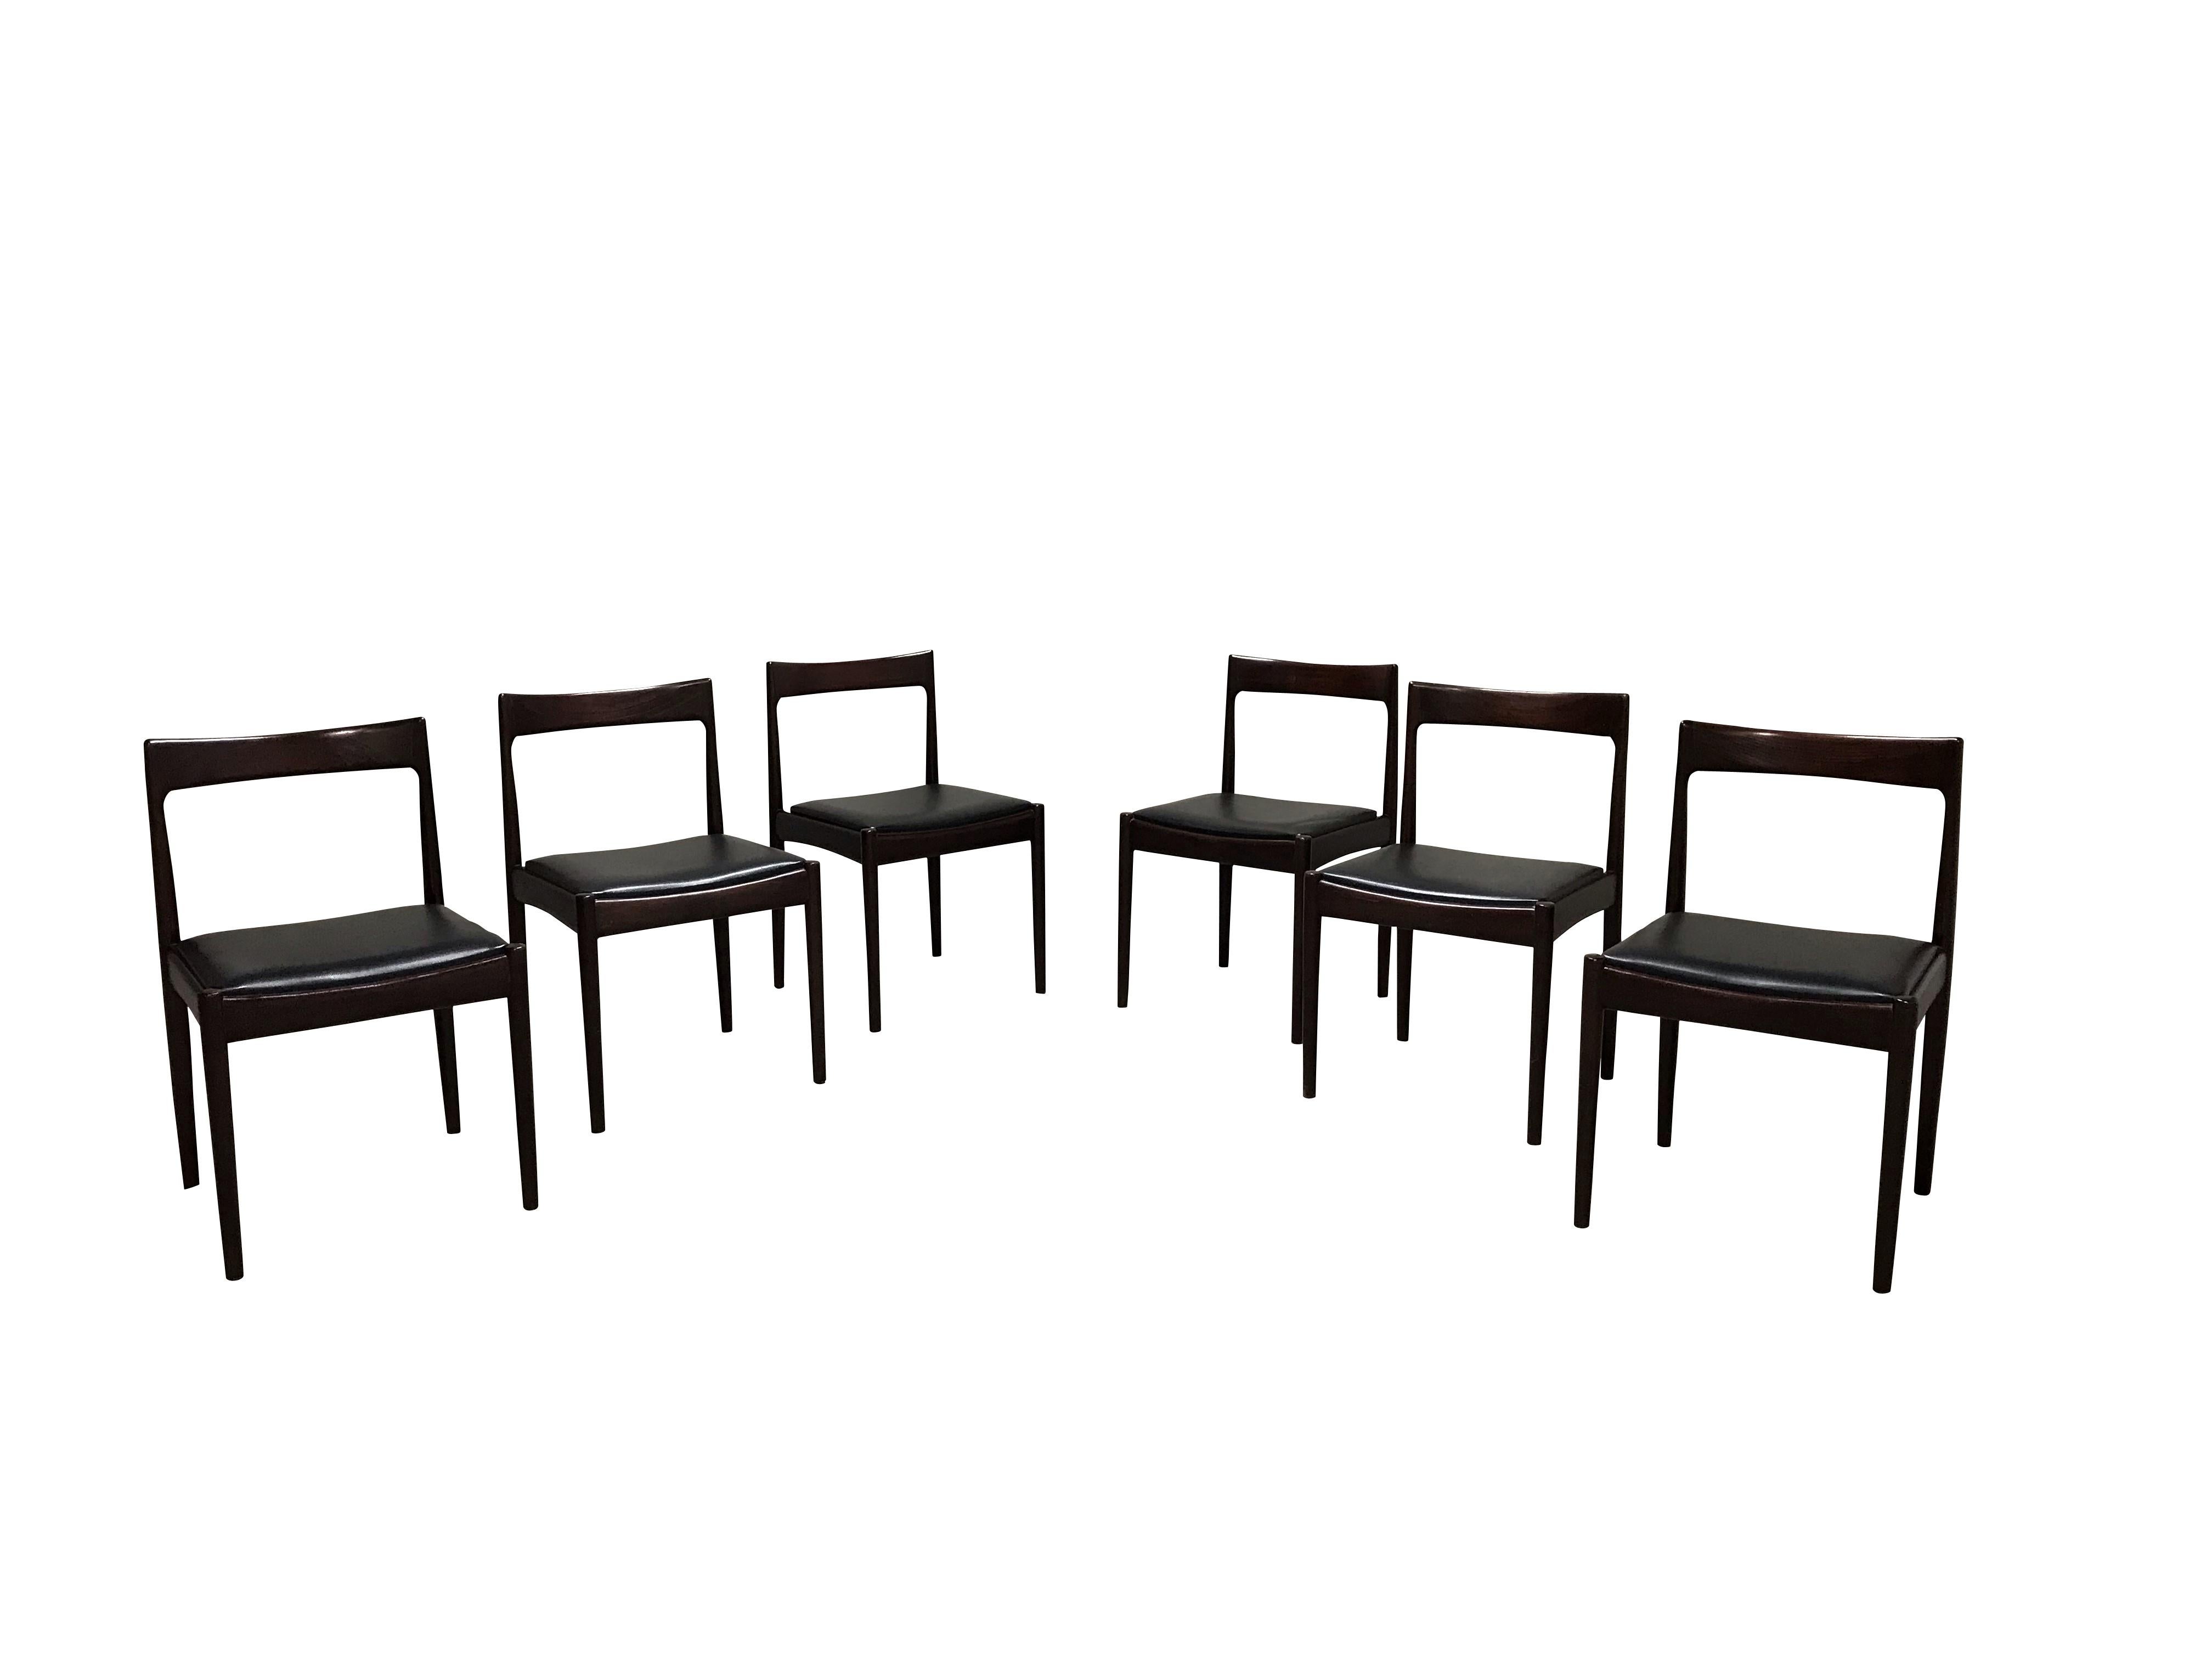 Satz von sechs 'Astrid' Vintage-Esszimmerstühlen aus Teakholz und Kunstleder.

Entworfen von Oswald Vermaercke für V-Form.

Perfekter Zustand.

1960er Jahre - Belgien

Abmessungen:
Höhe 78cm/30.5